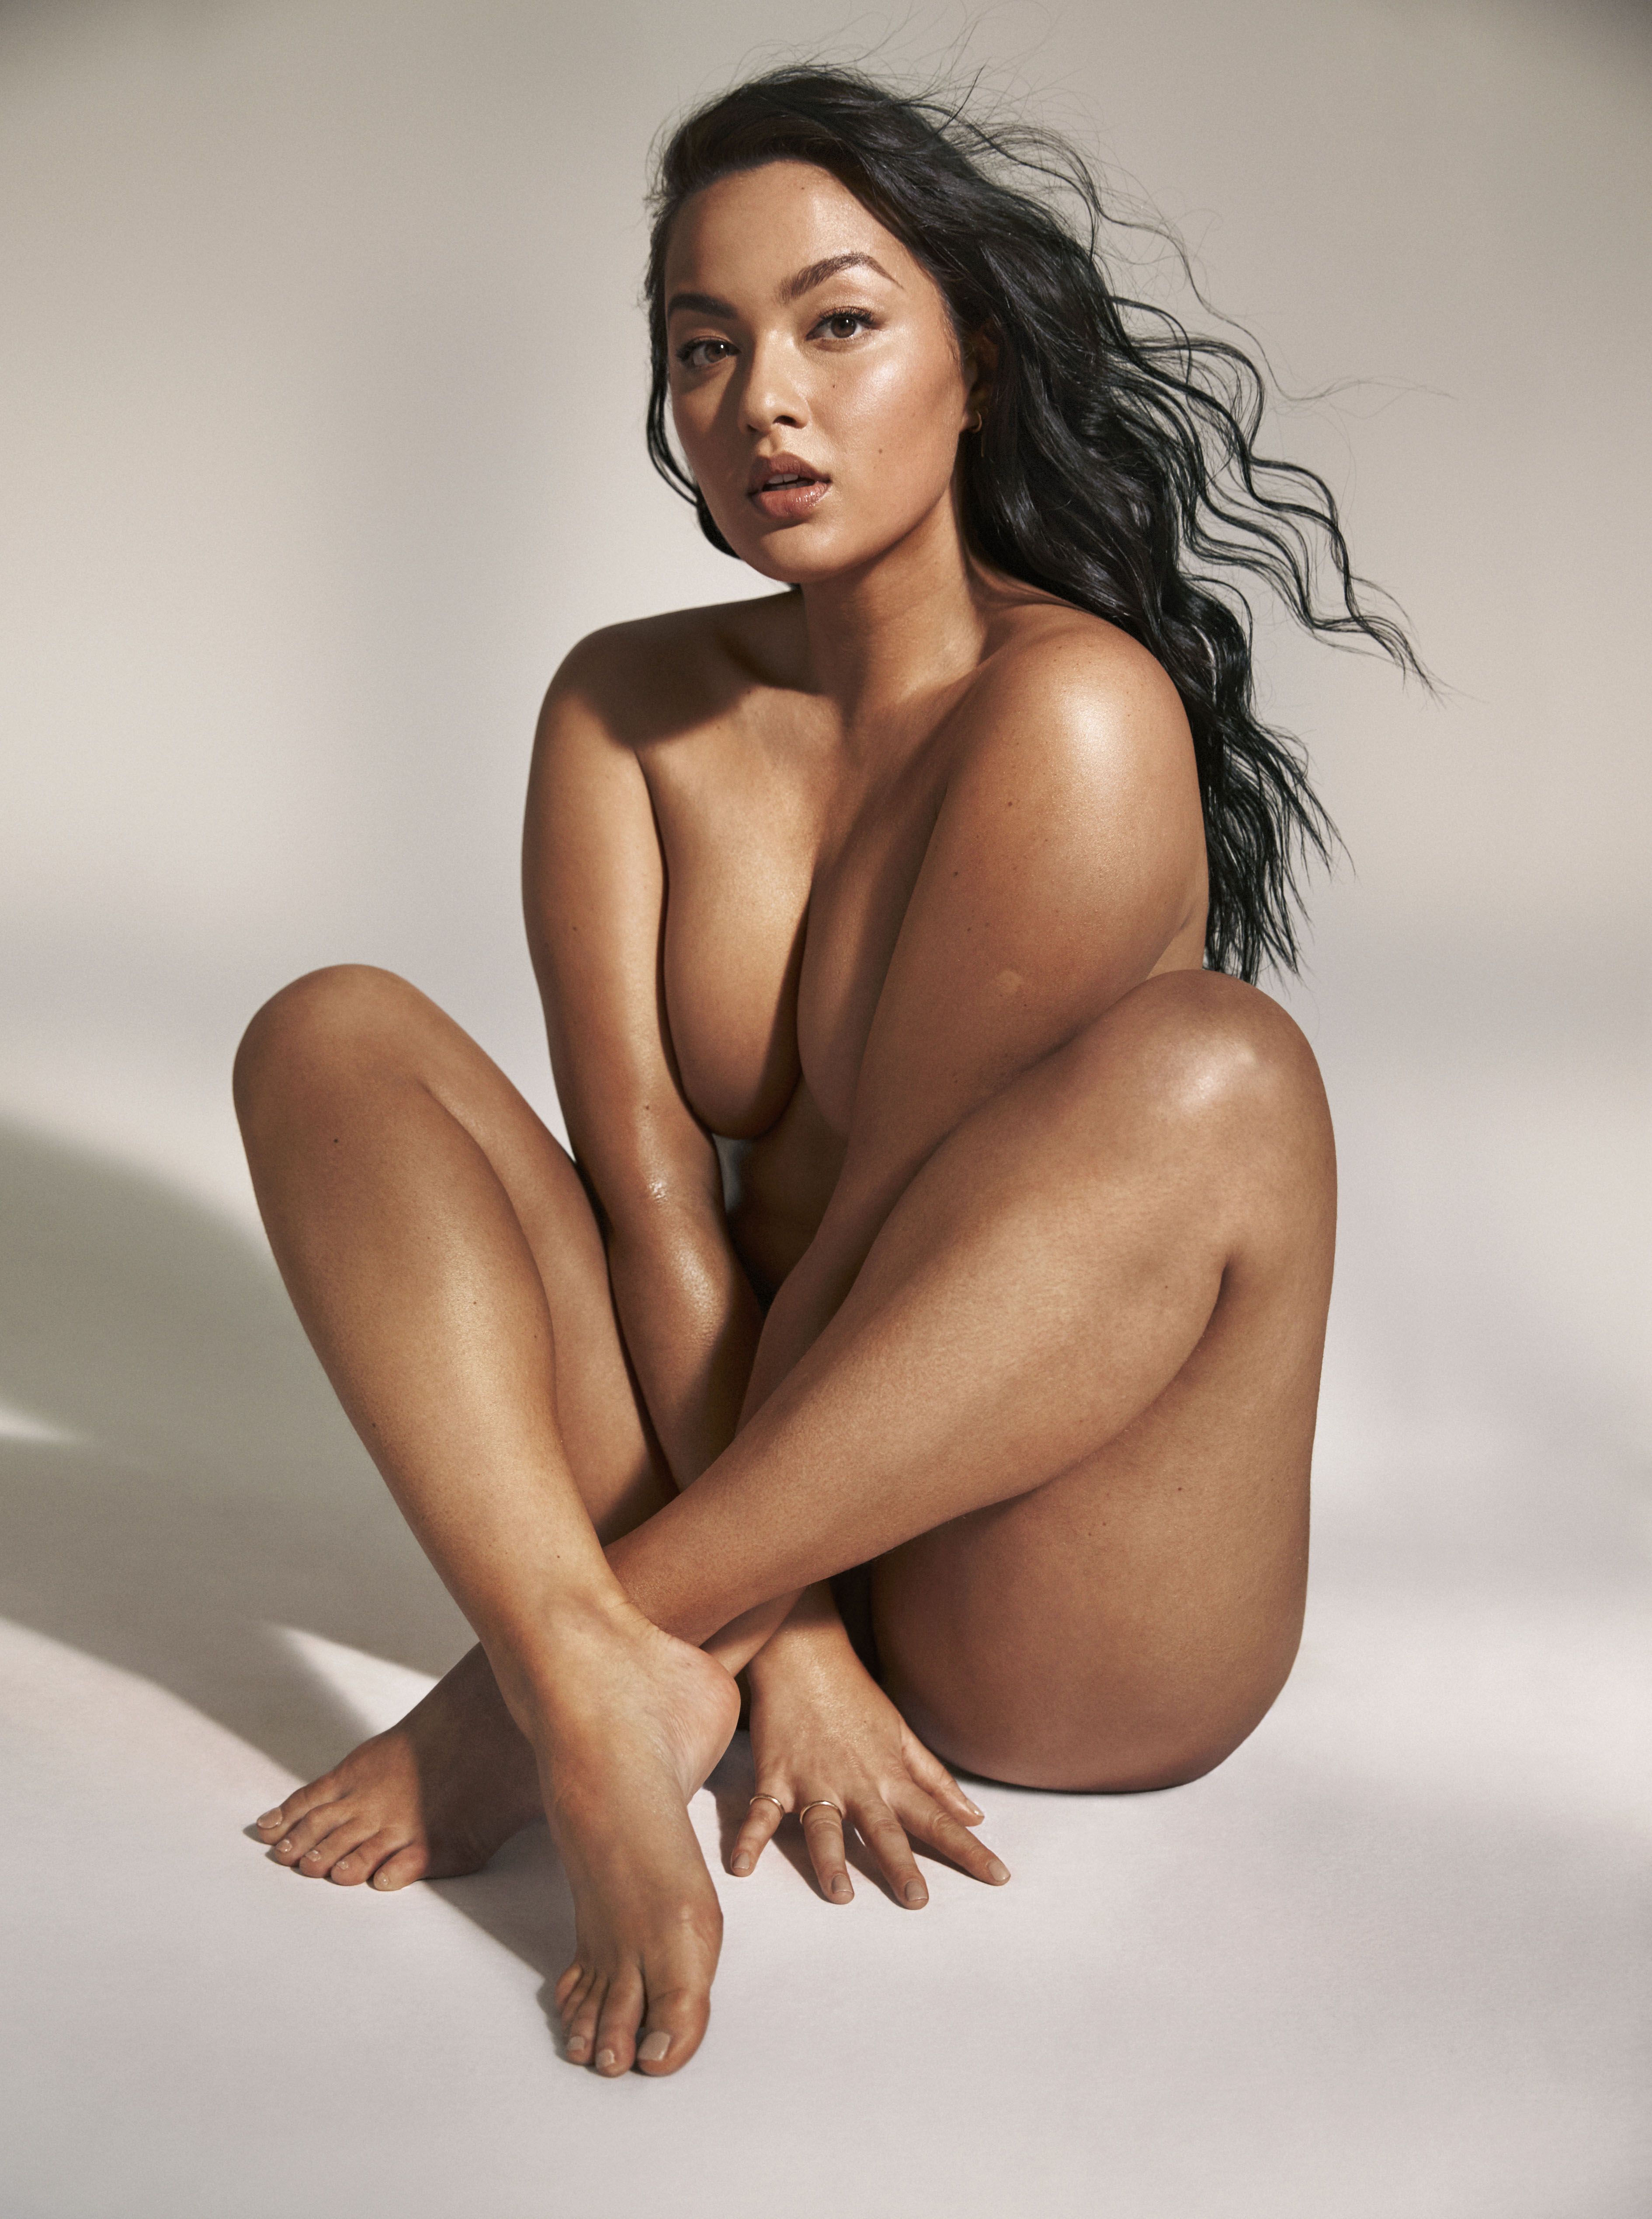 Mia kang topless